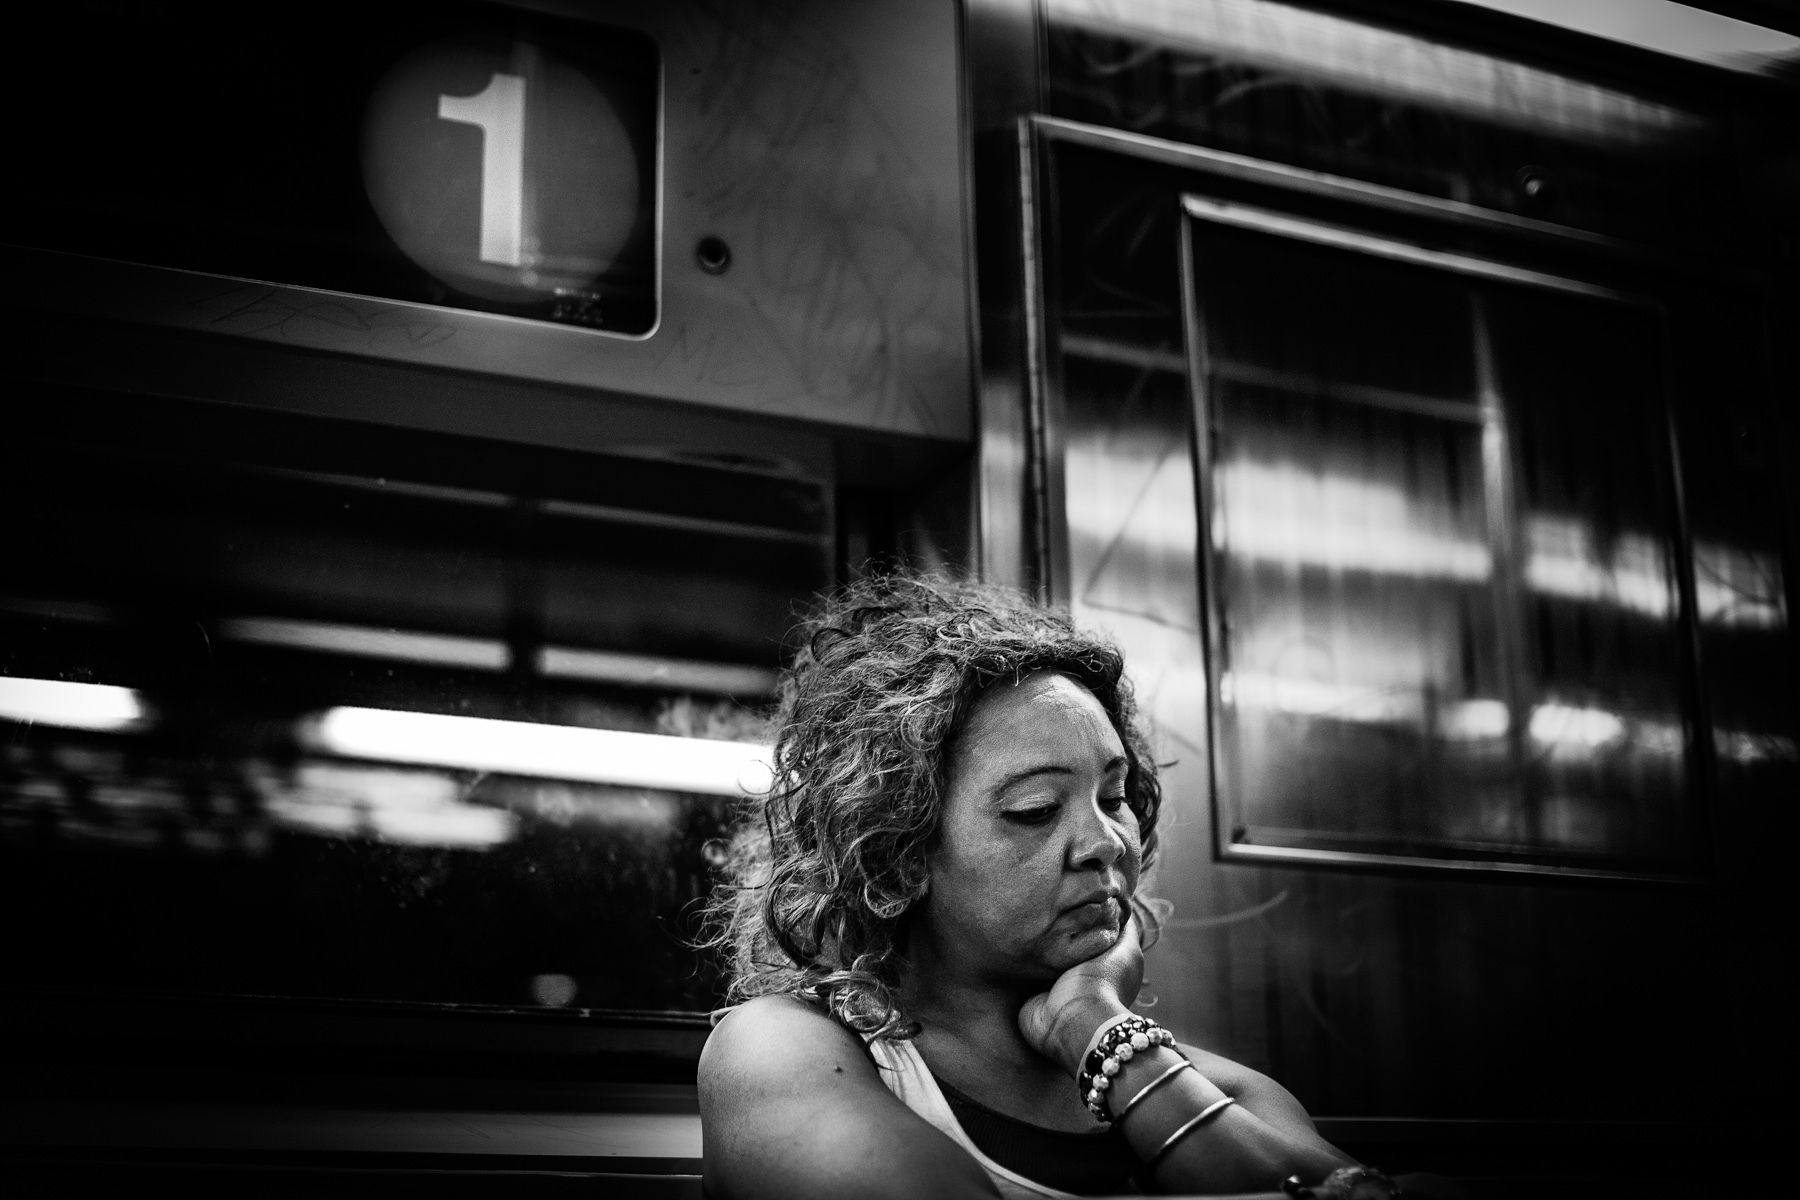 Subway, New York, NY, 2012